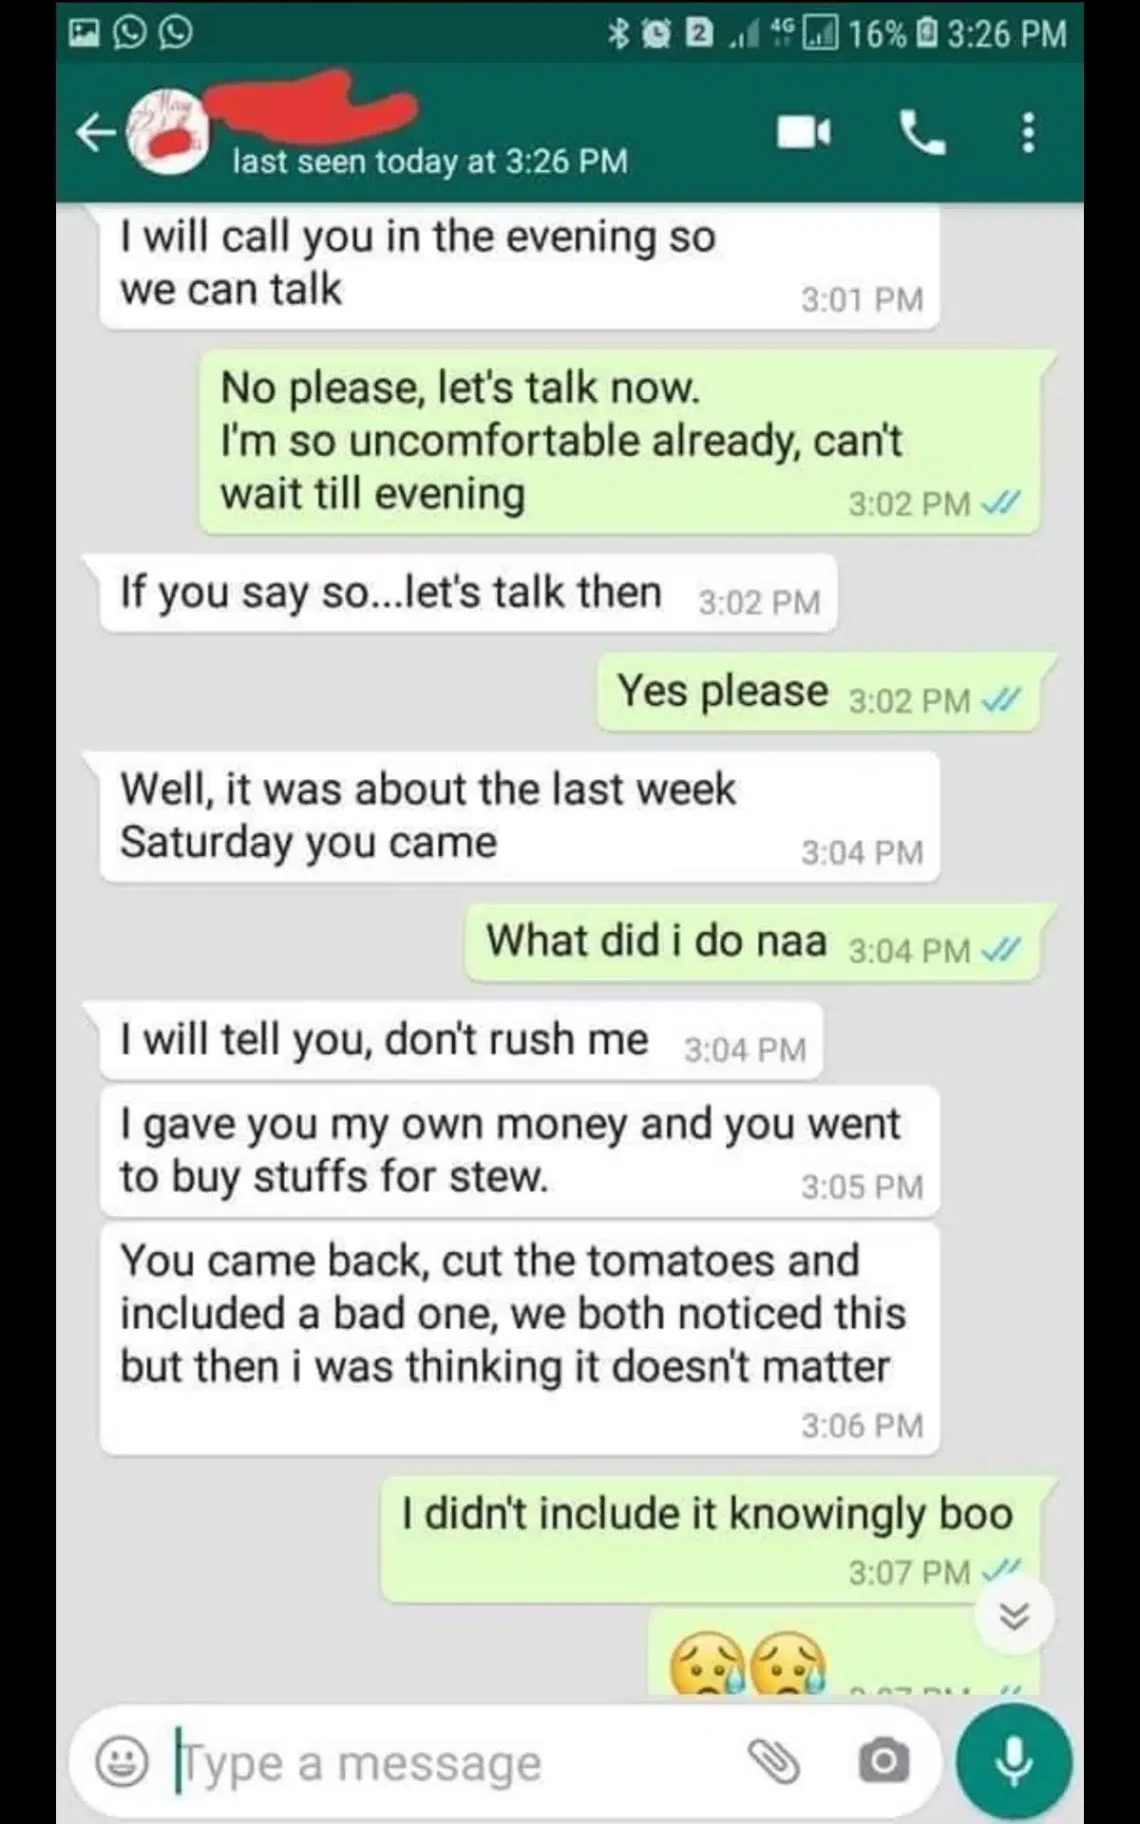 Un homme rompt d'avec sa petite amie pour avoir cuisiné un ragoût avec des tomates pourries. Elle a refusé de manger le repas.